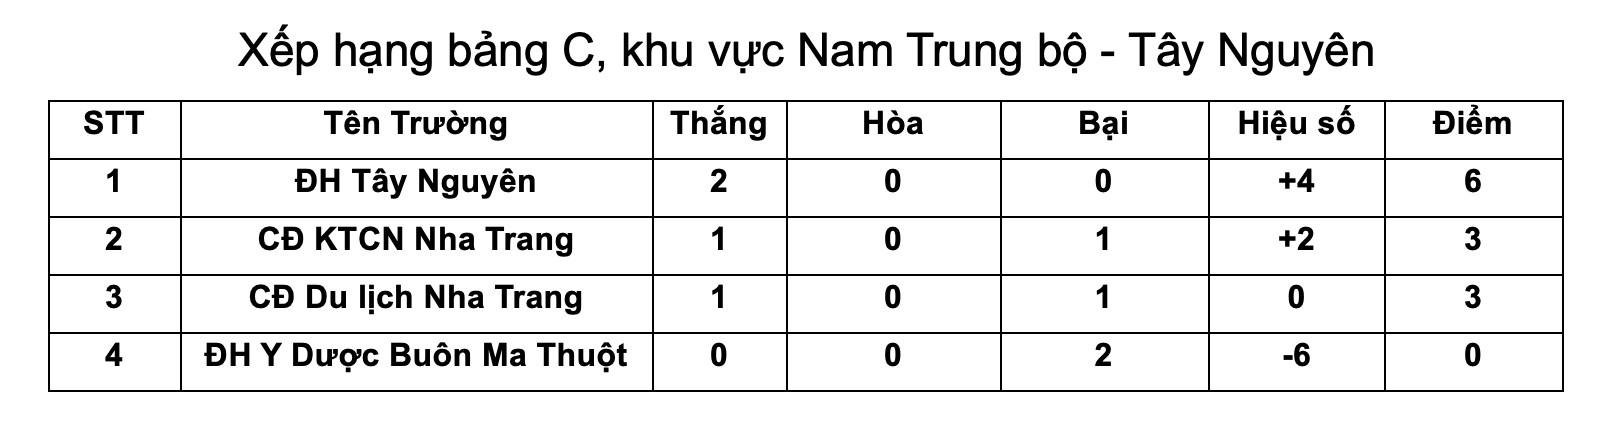 CĐ KTCN Nha Trang 0-1 ĐH Tây Nguyên: Thắng nghẹt thở phút cuối - Ảnh 2.